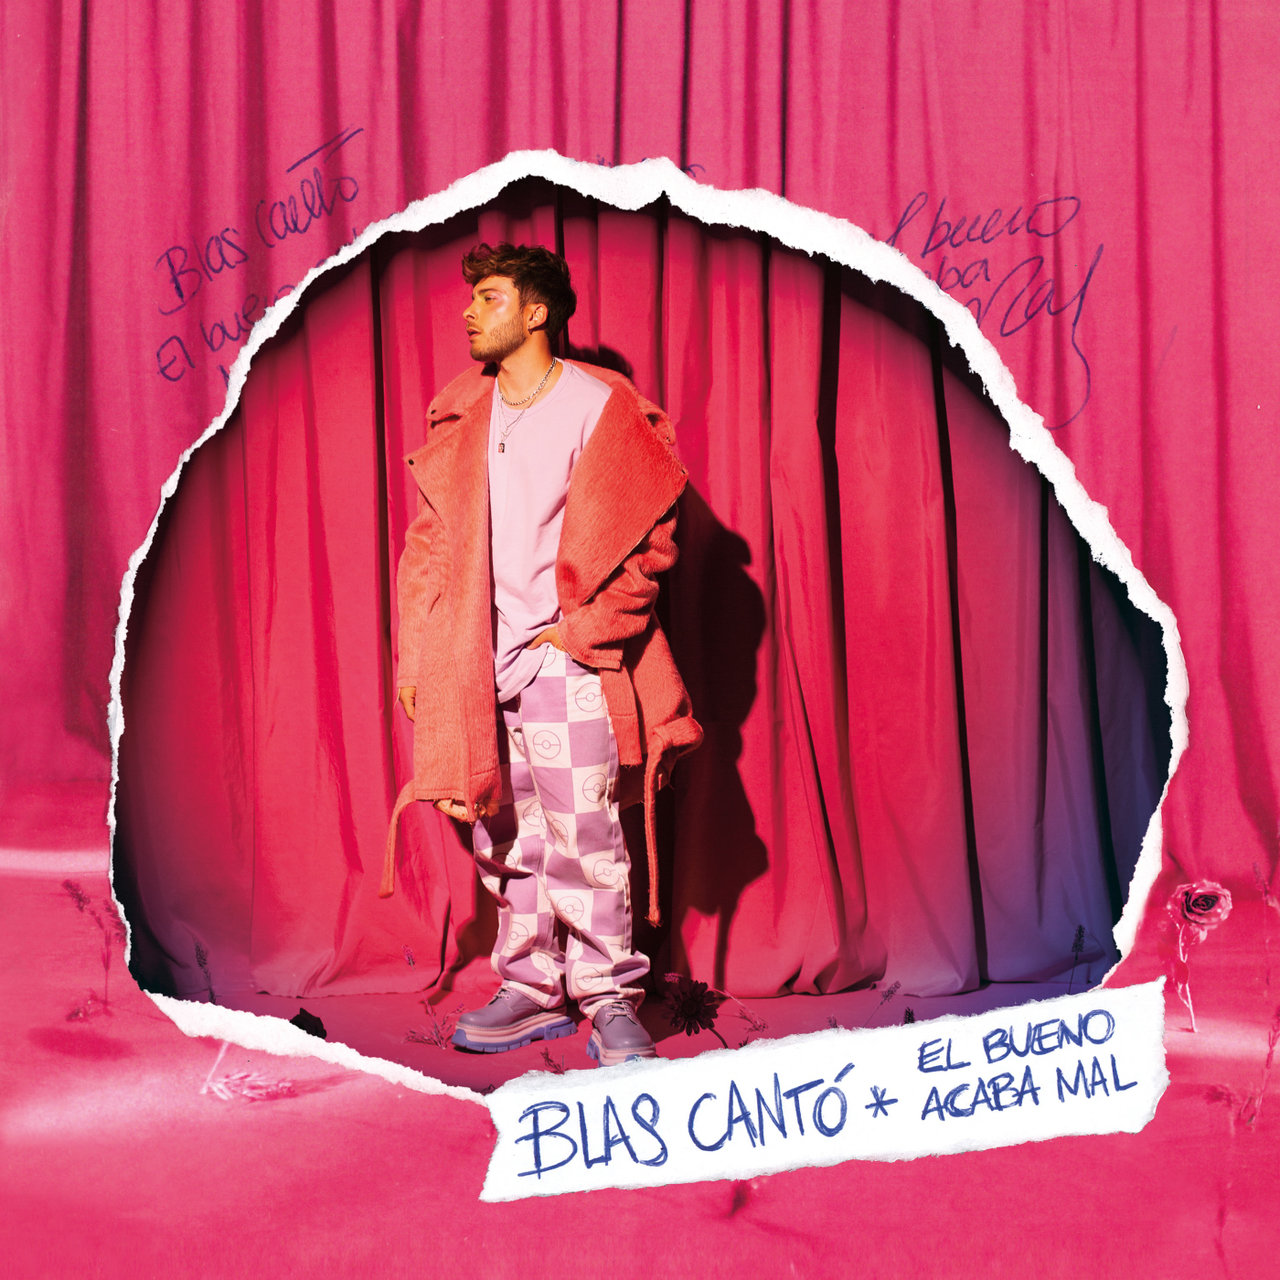 Blas Cantó — El bueno acaba mal cover artwork